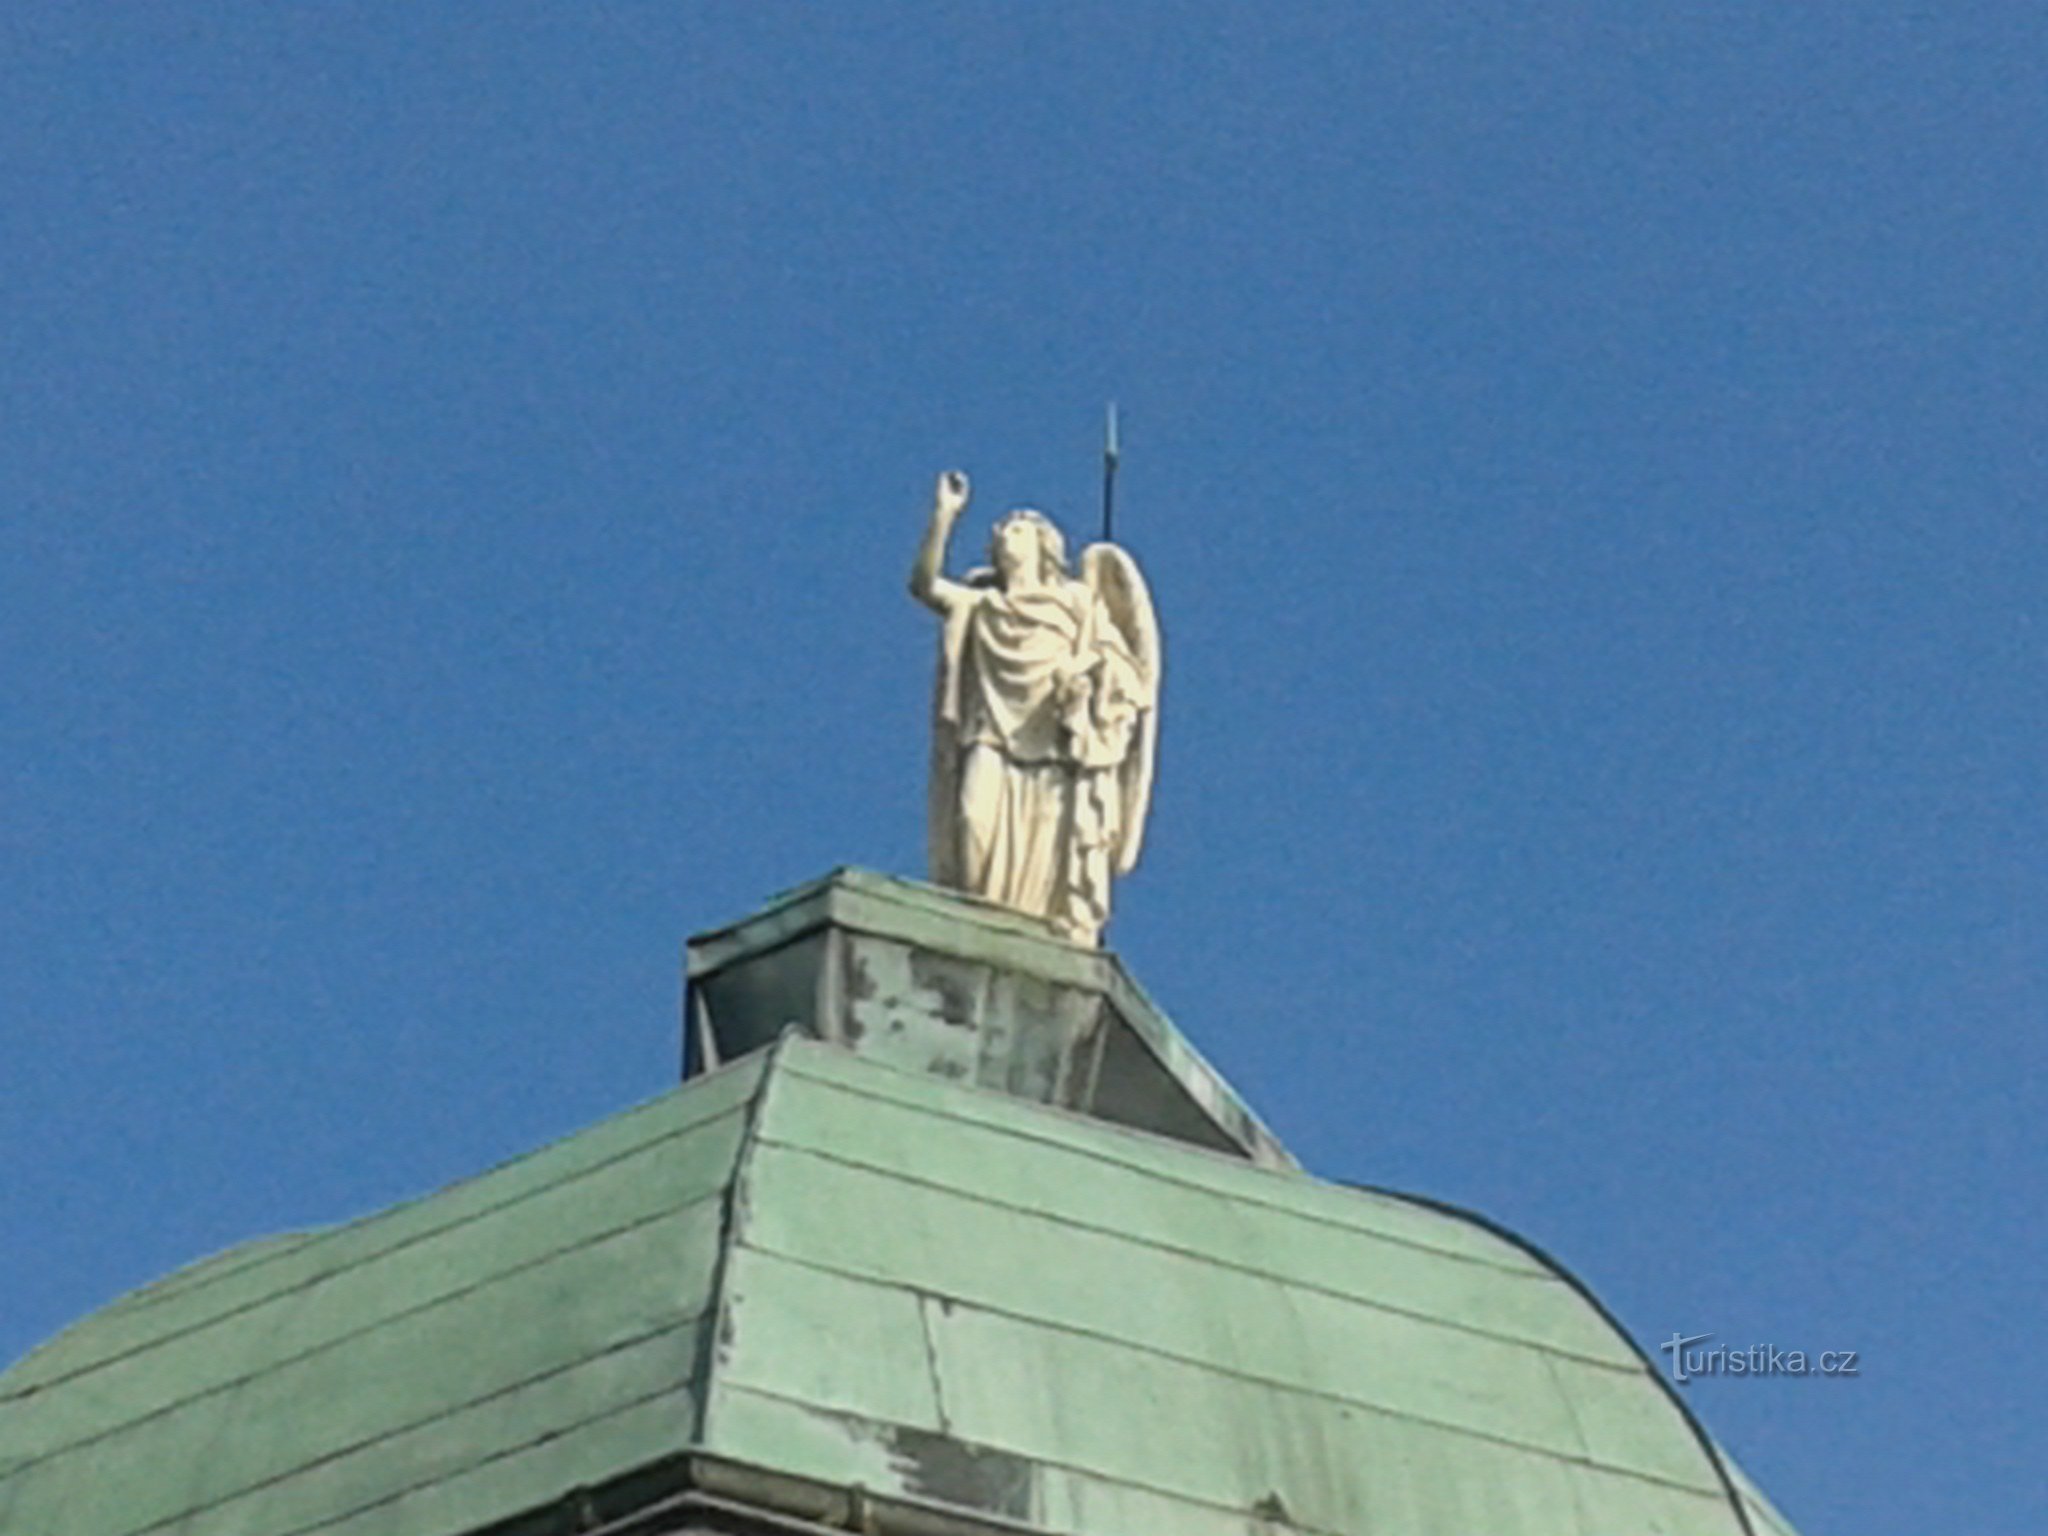 angyal szobra az adminisztrációs épületen